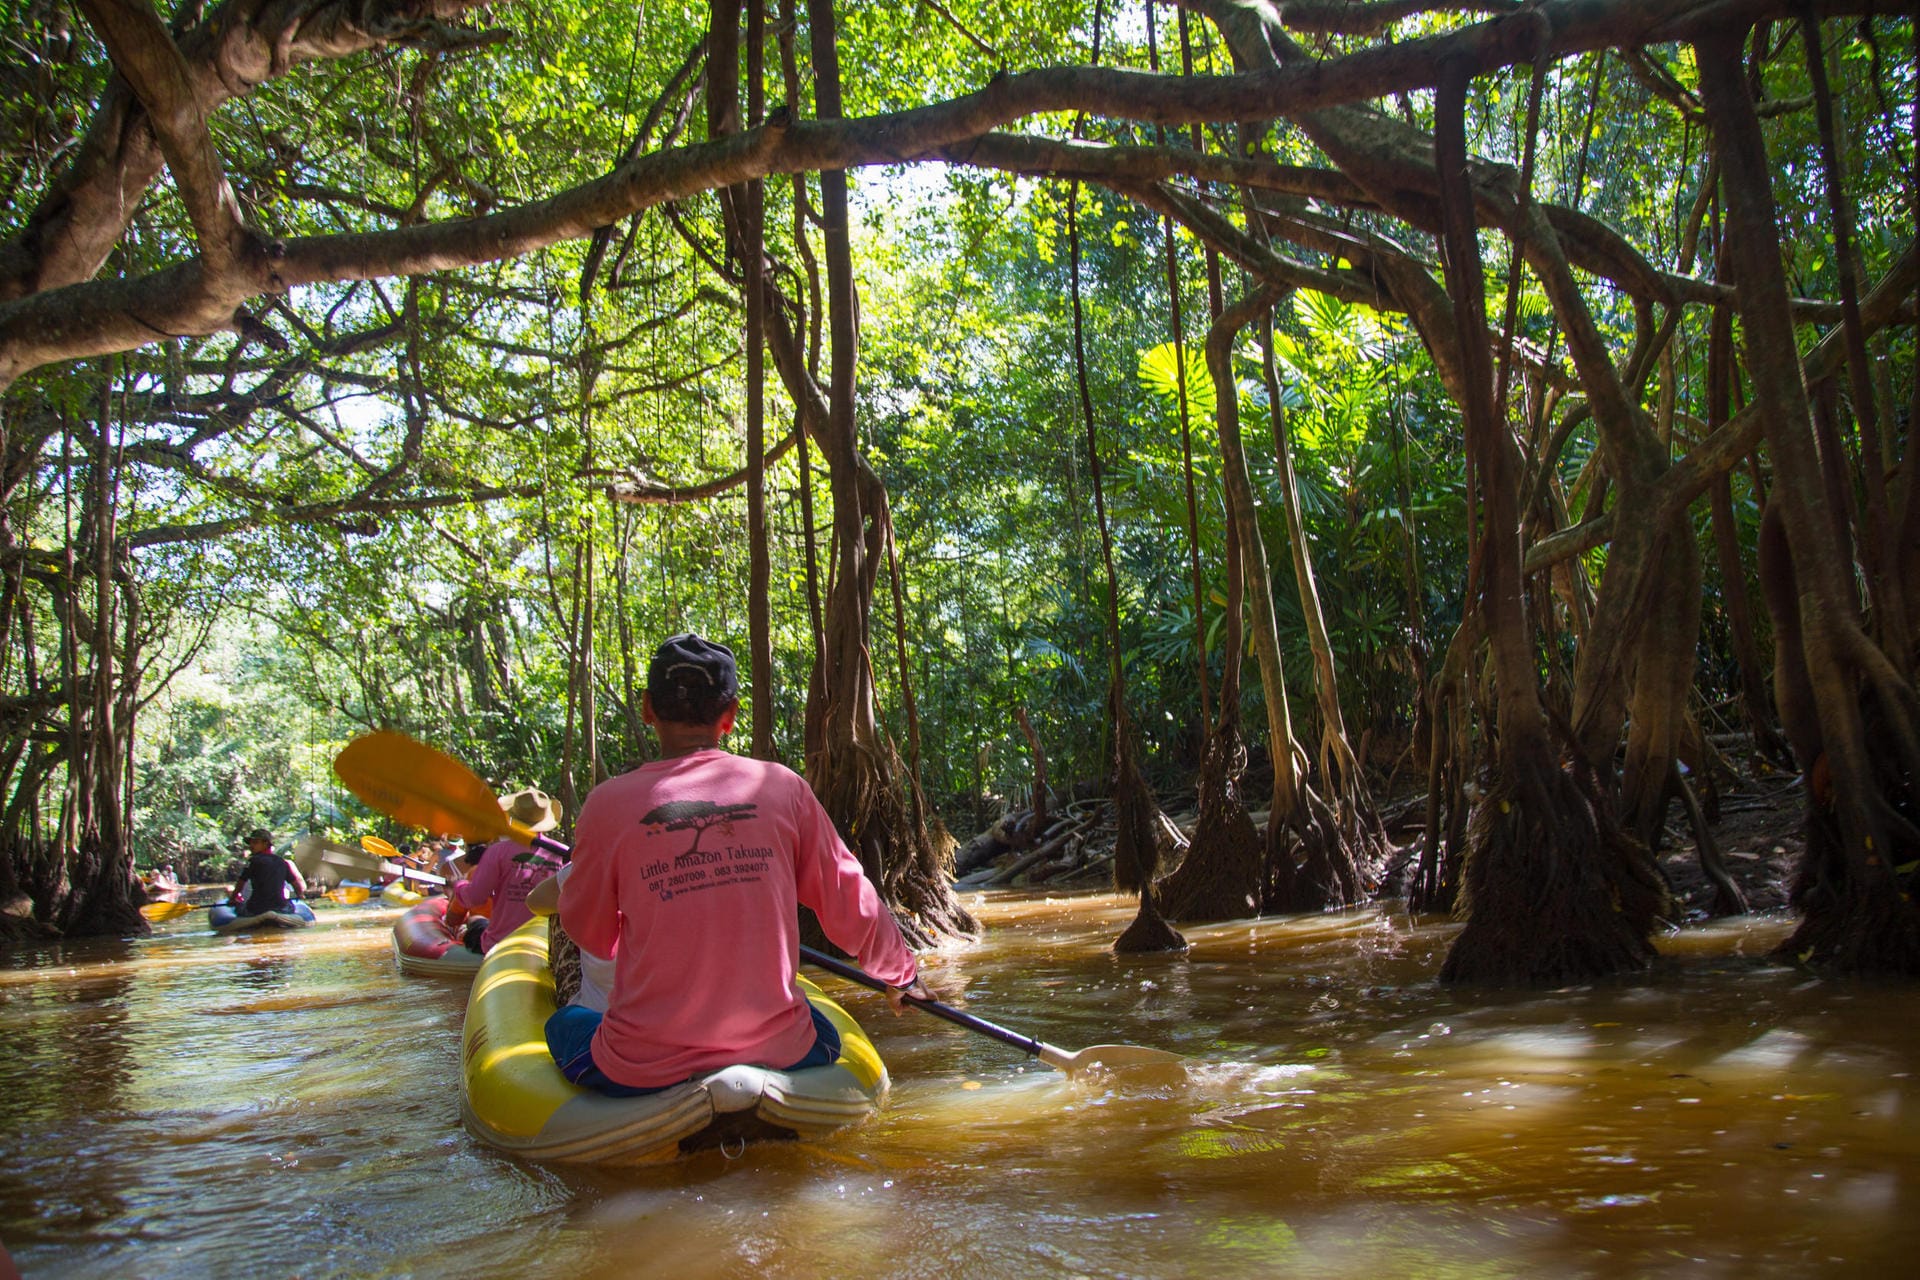 Paddelbootausflug auf dem ''Little Amazonas'': Ruhig plätschern die Paddel unter riesigen Banyan-Bäumen mit gewaltigen Luftwurzeln.